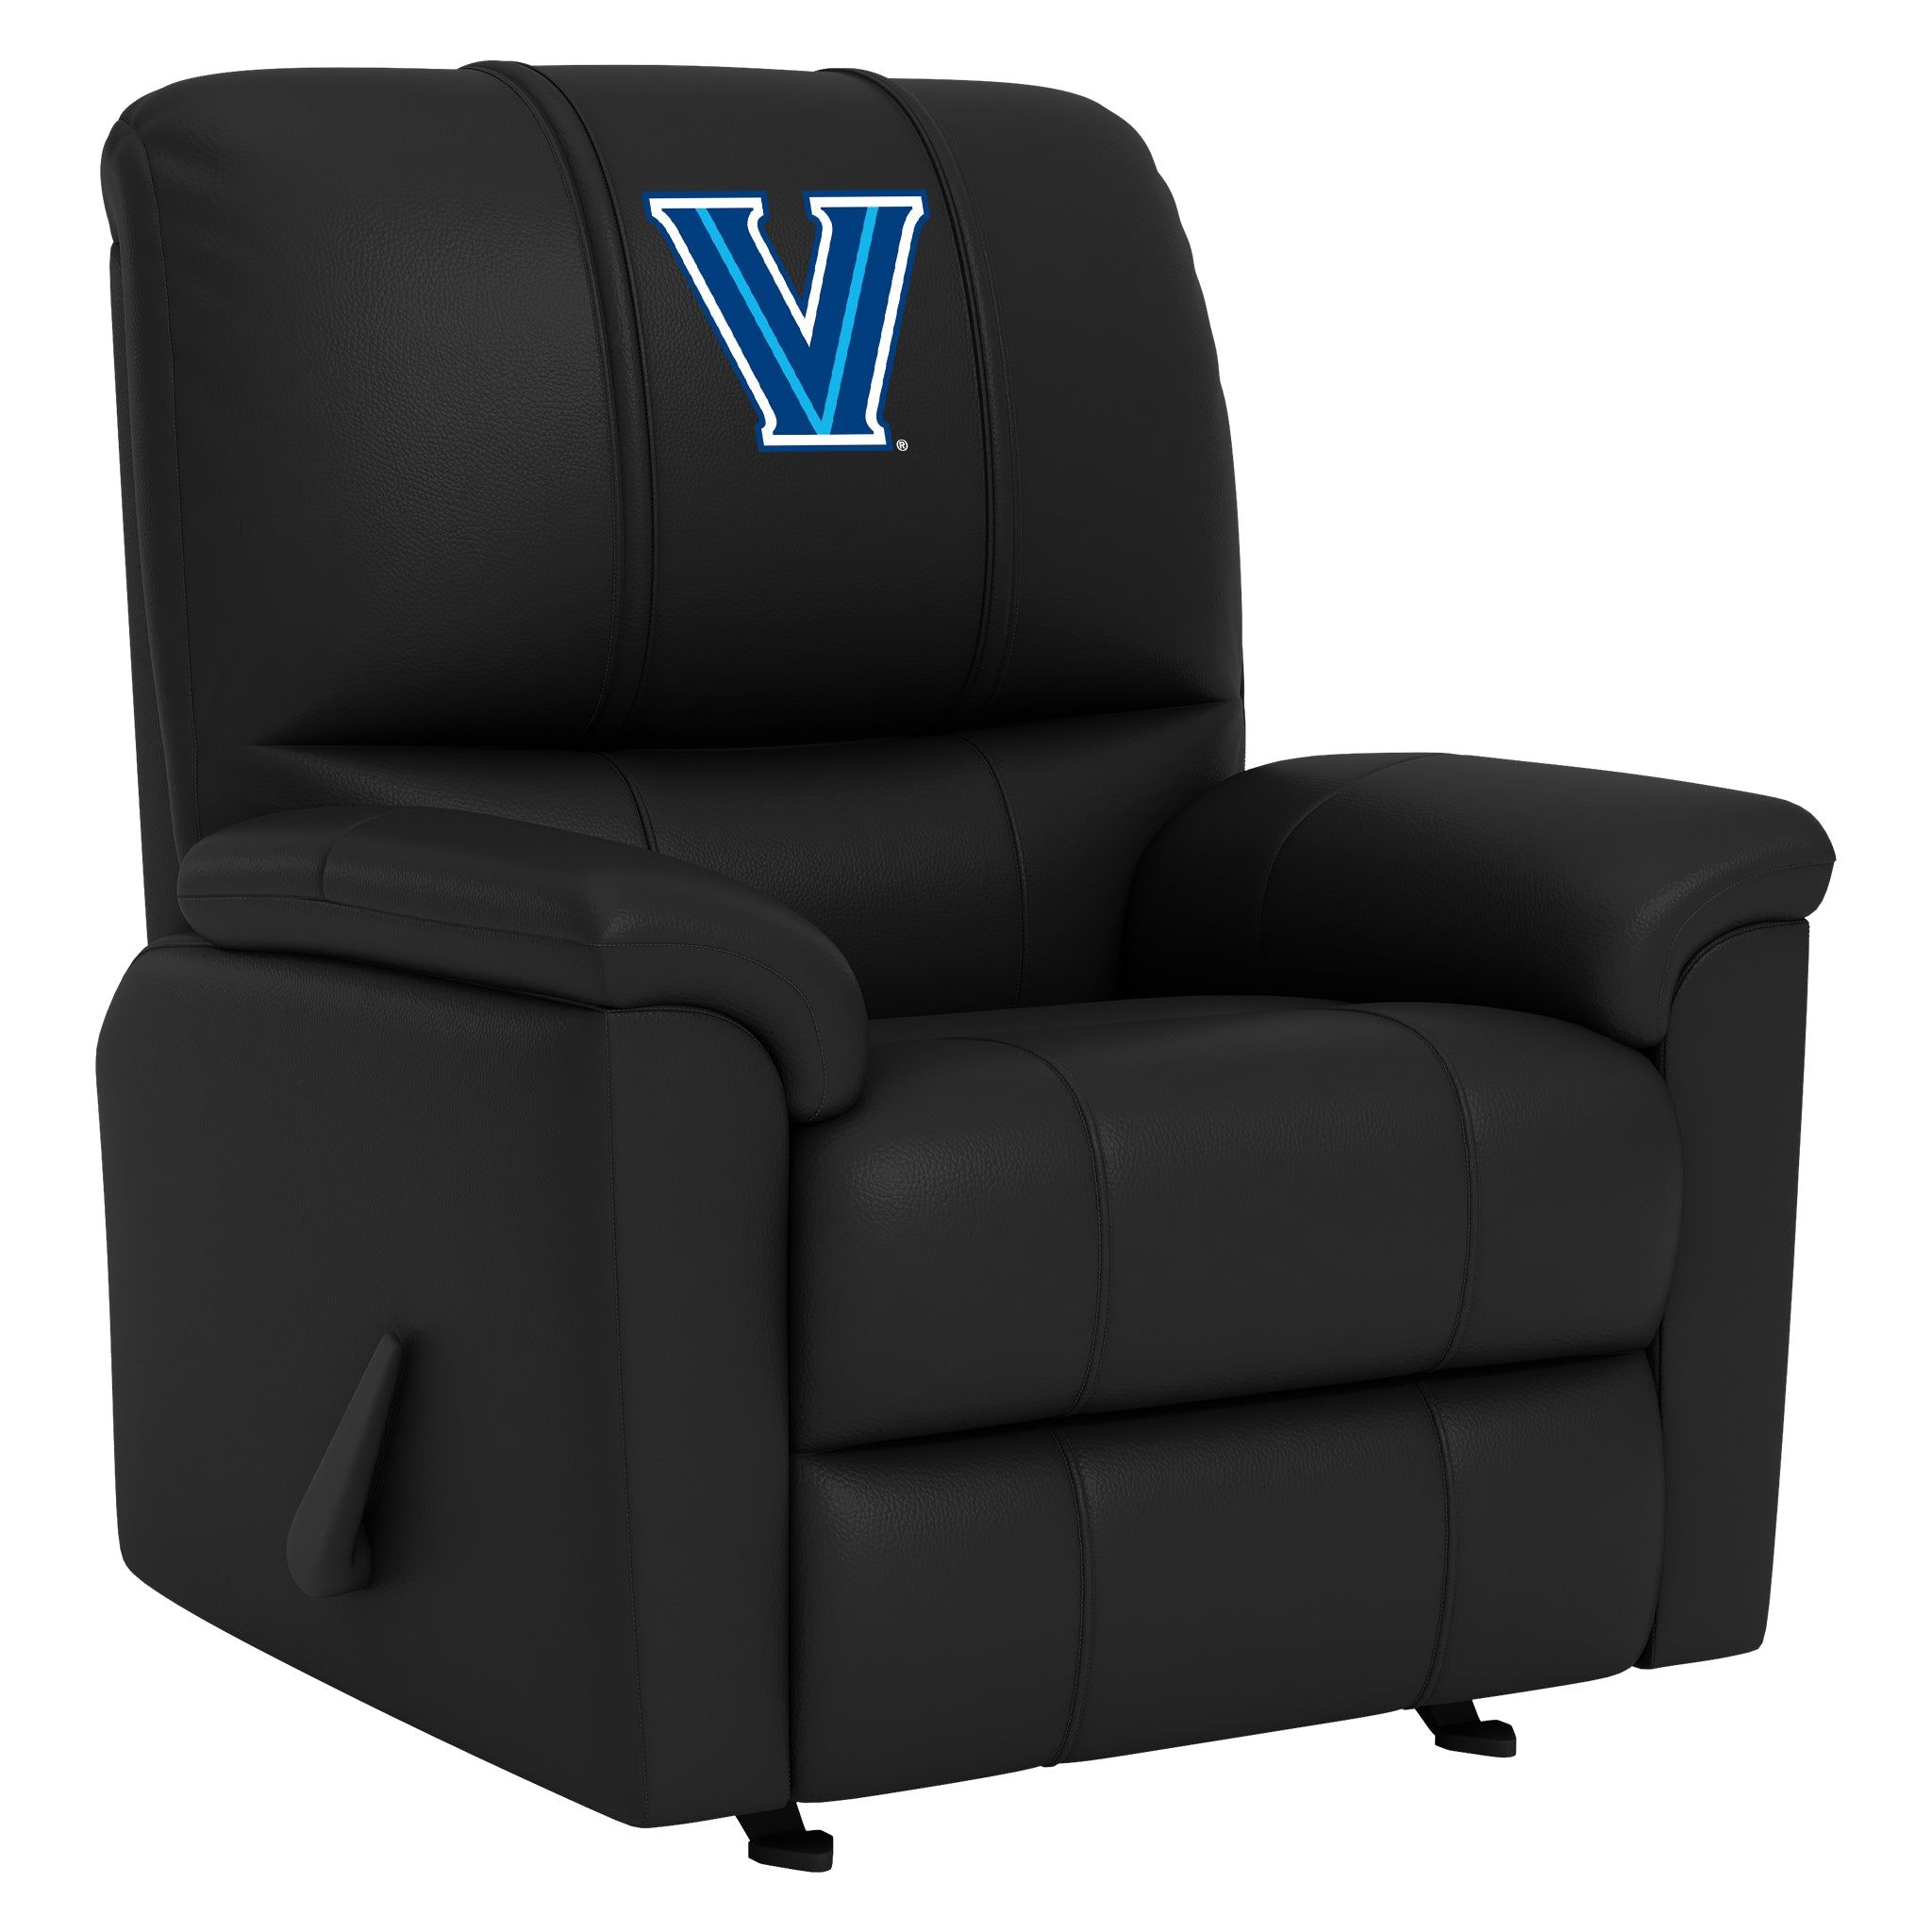 Villanova Silver Club Chair with Villanova Wildcats Logo